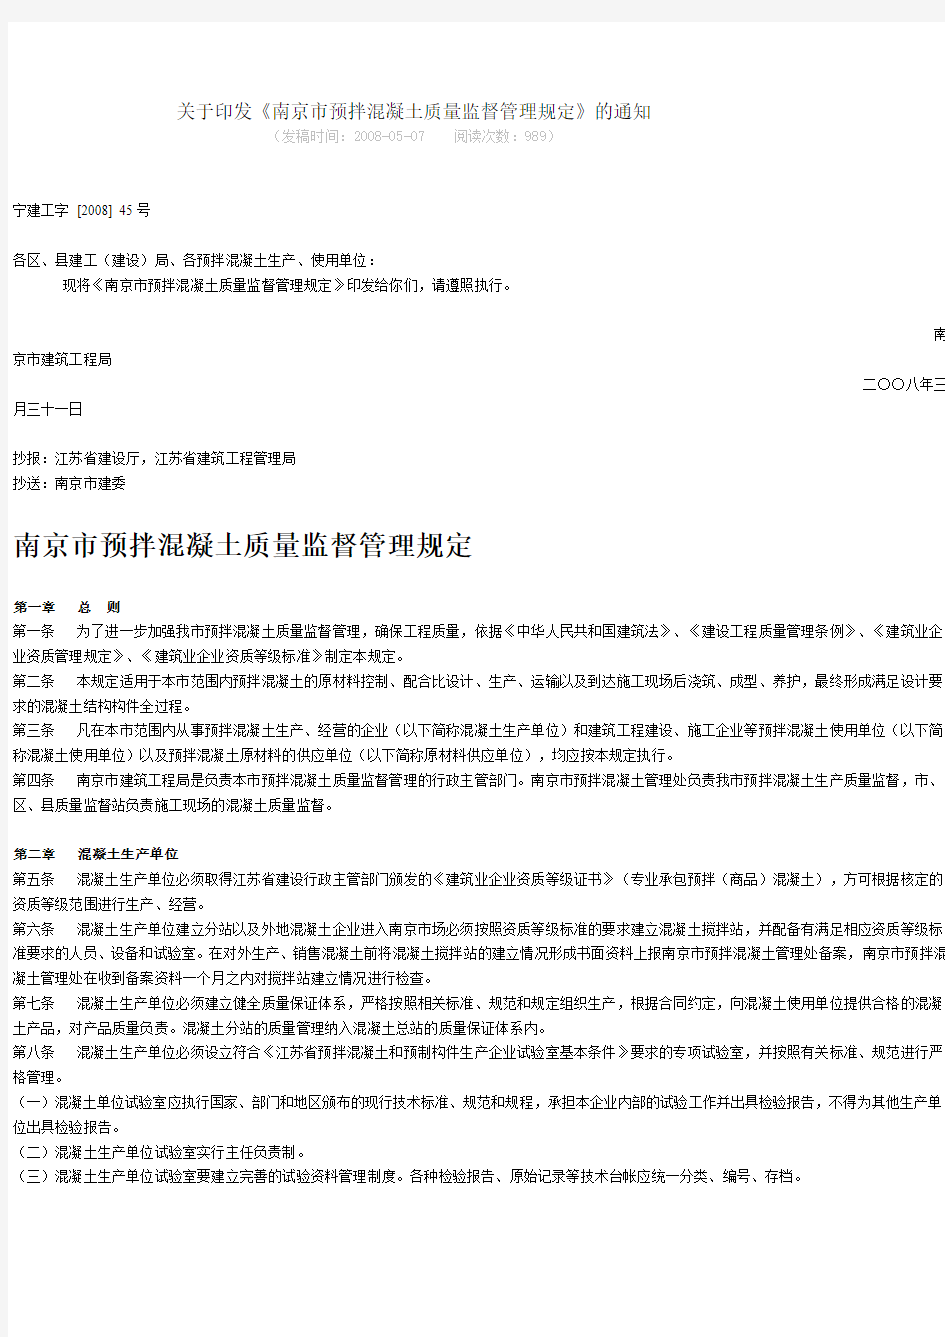 关于印发《南京市预拌混凝土质量监督管理规定》的通知